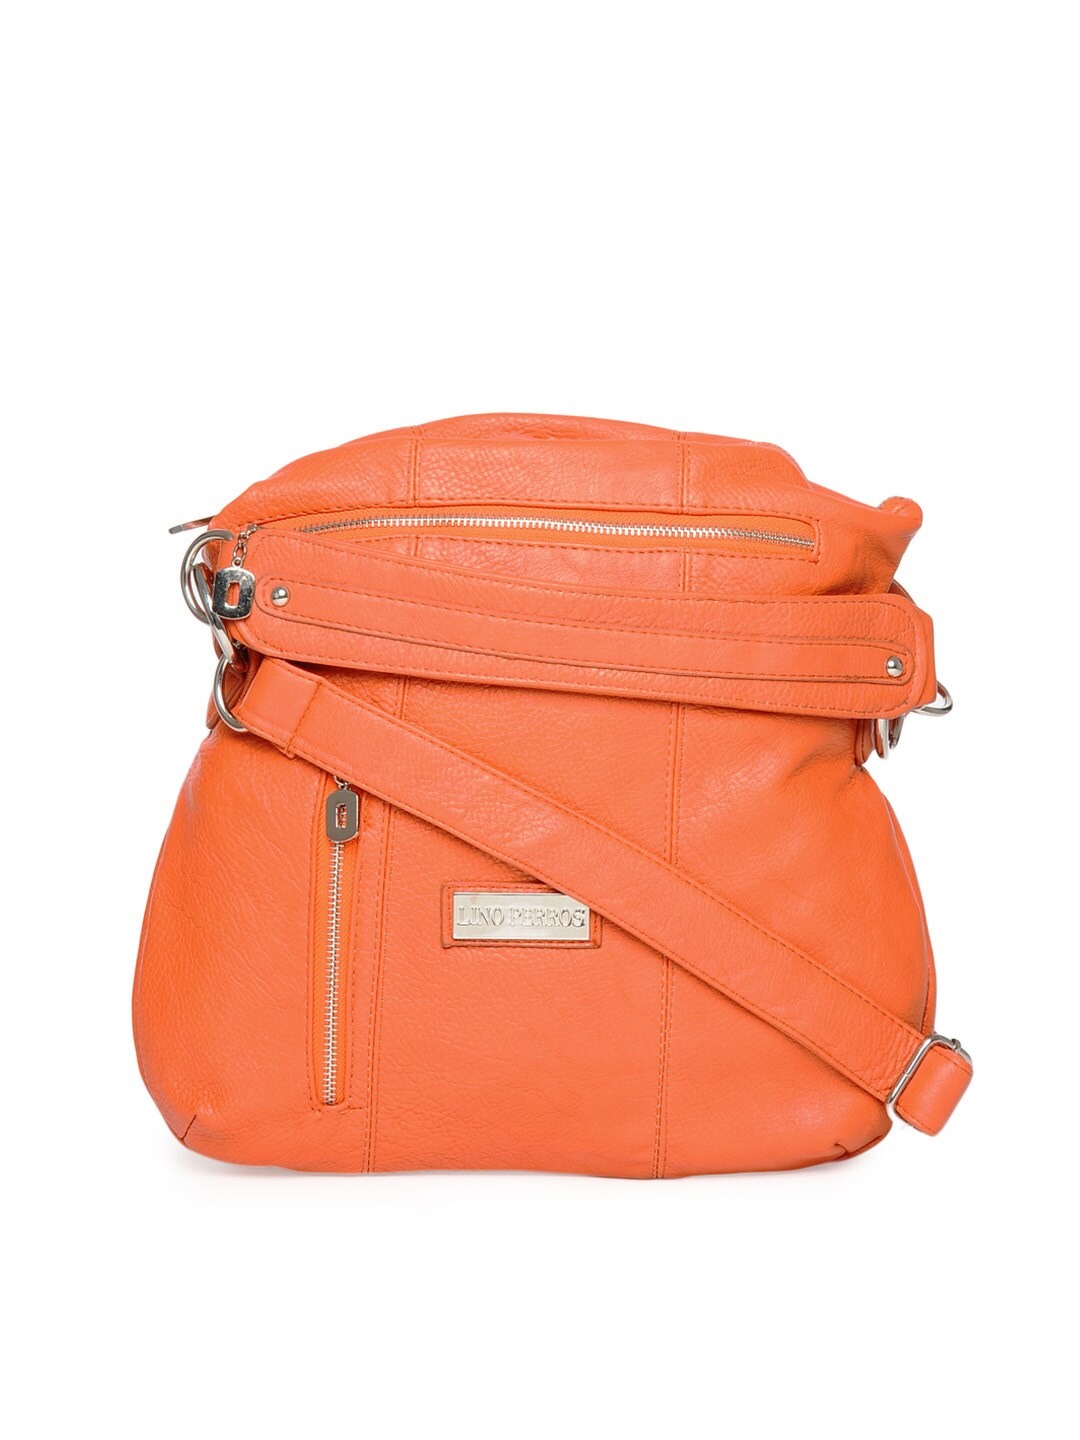 Lino Perros Women Orange Handbag